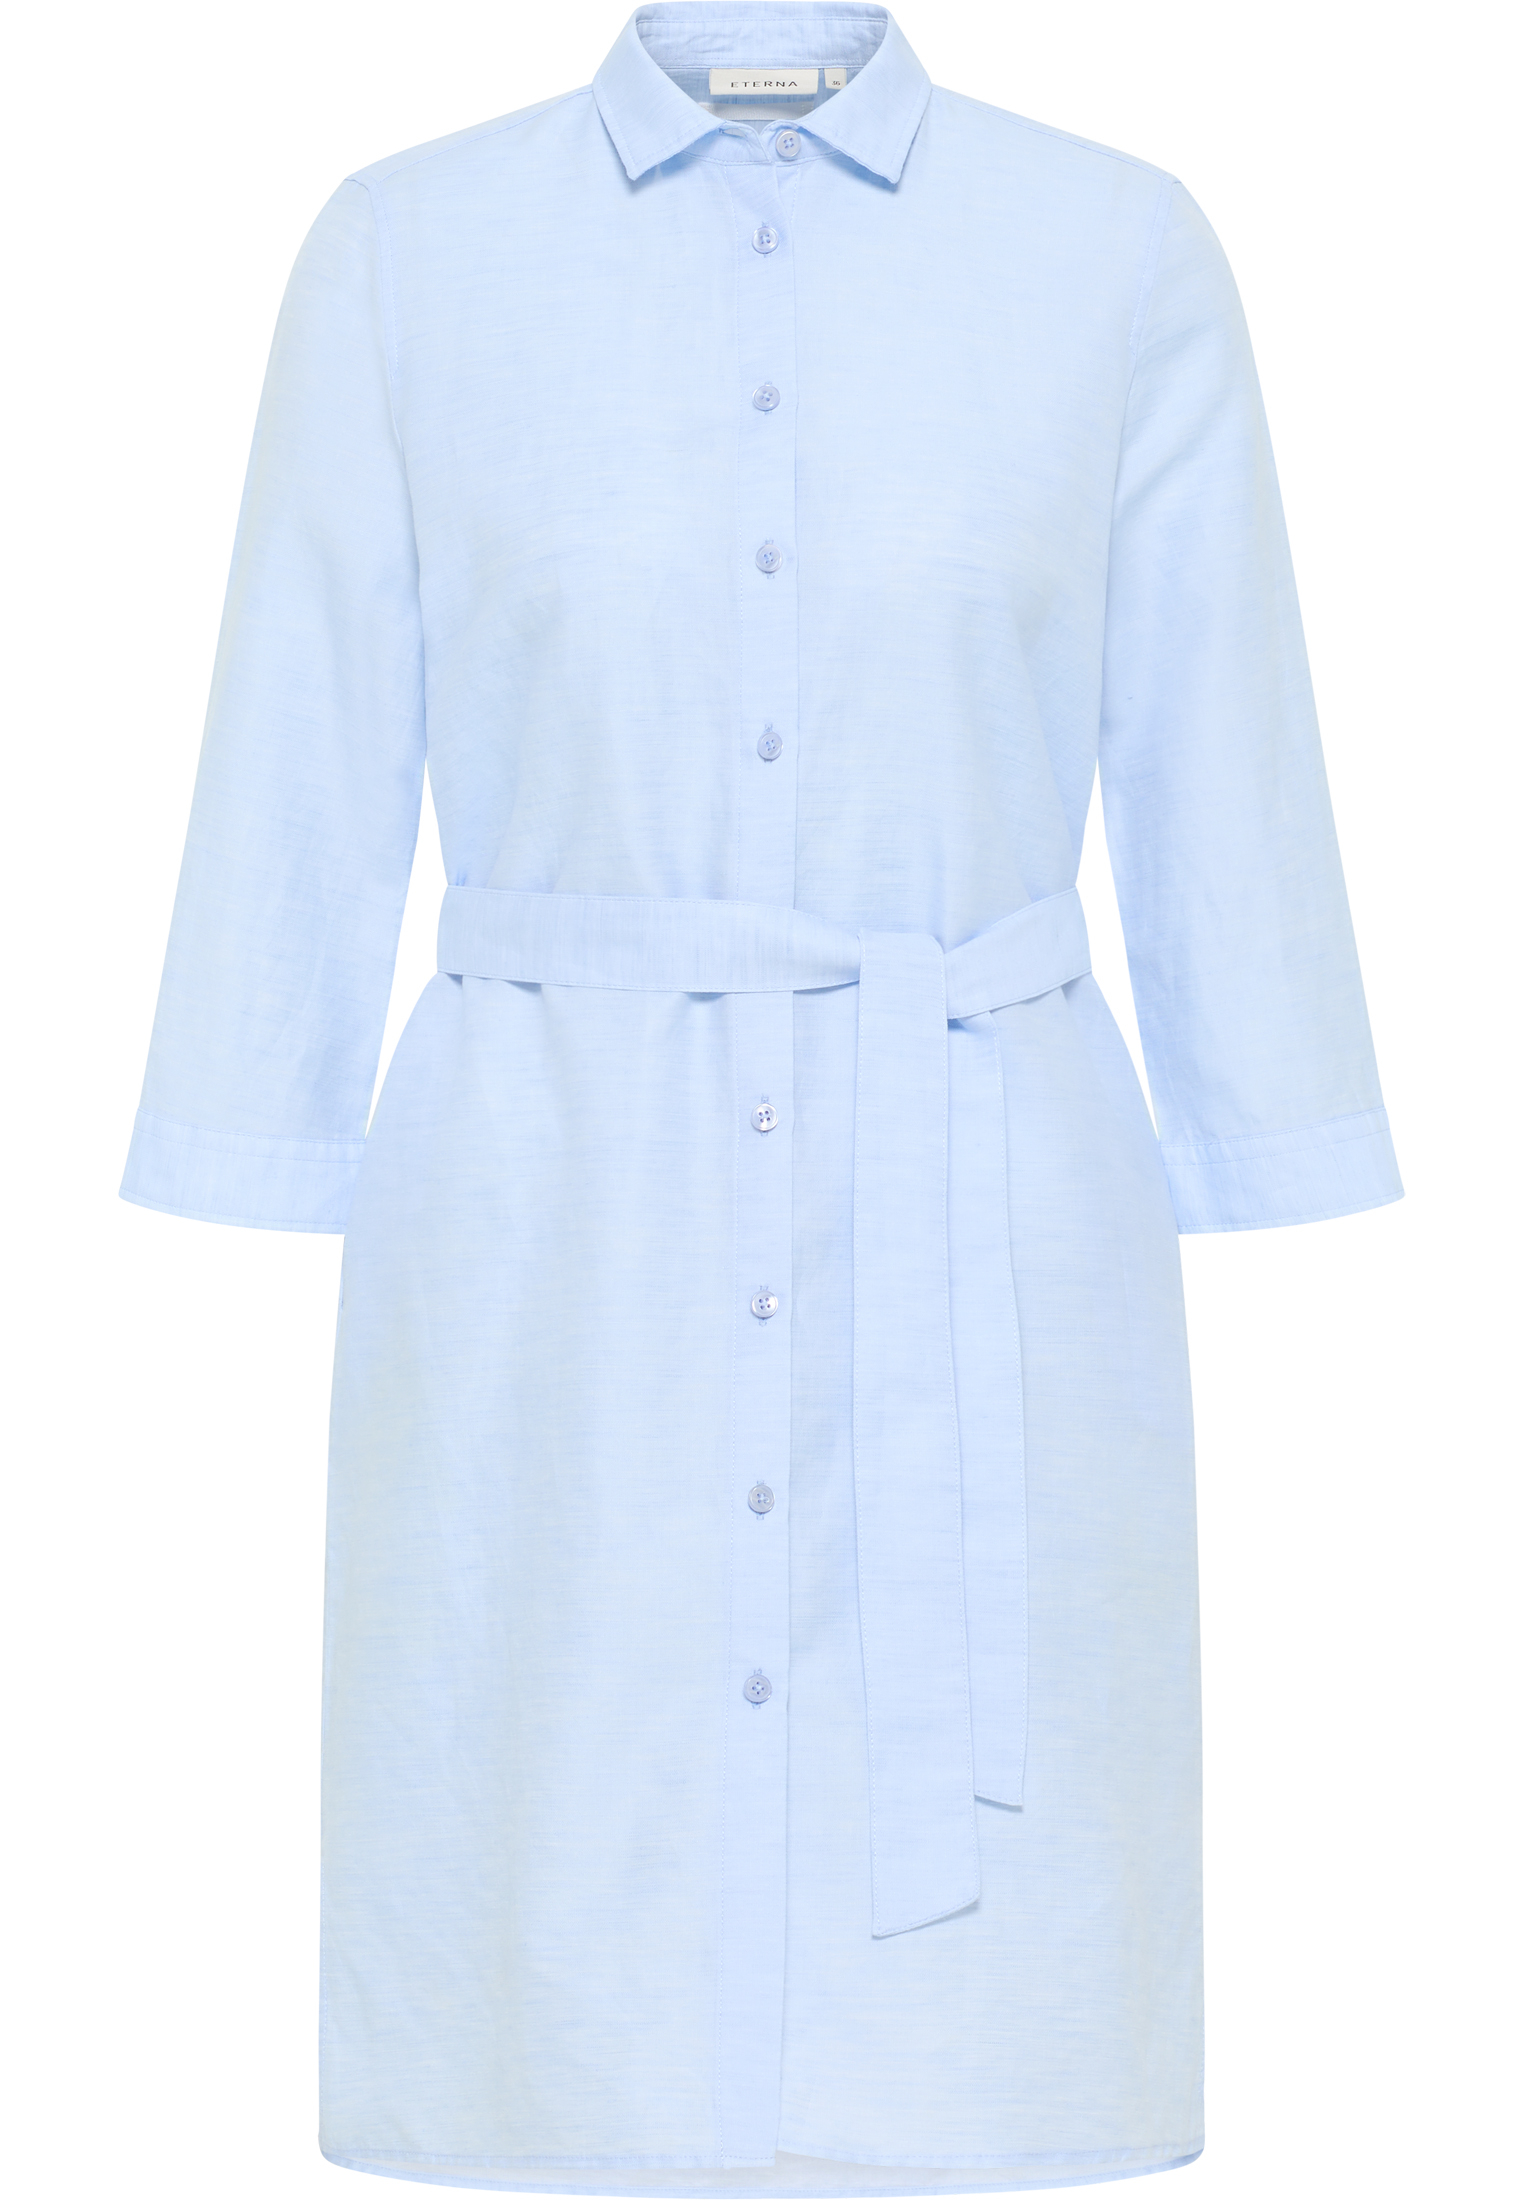 Linen Shirt Bluse in 3/4-Arm hellblau | 2DR00264-01-11-46-3/4 46 | unifarben | hellblau 